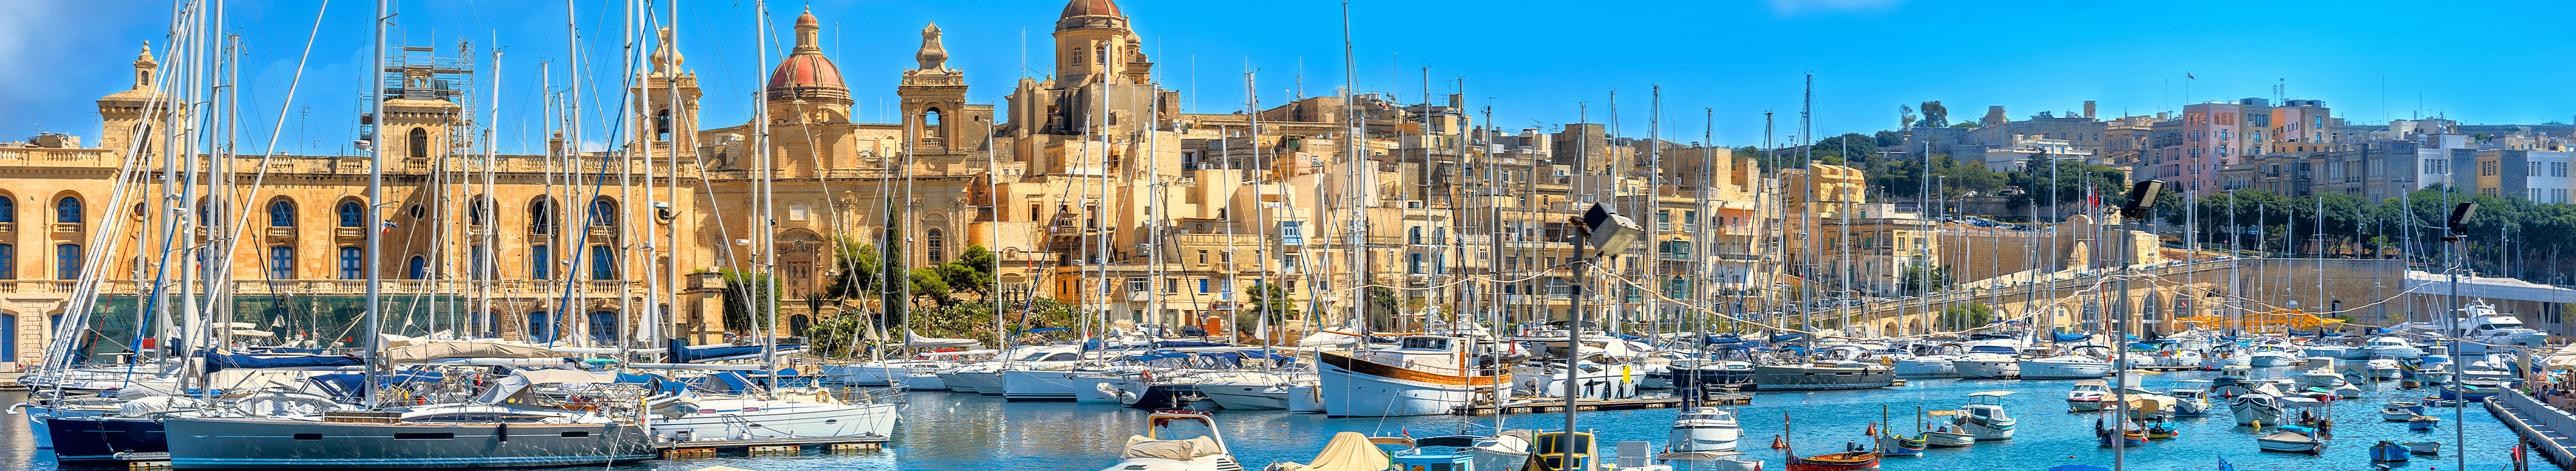 Urlaub auf Malta. Blick auf den Hafen von Valetta und Kirche im Hintergrund.